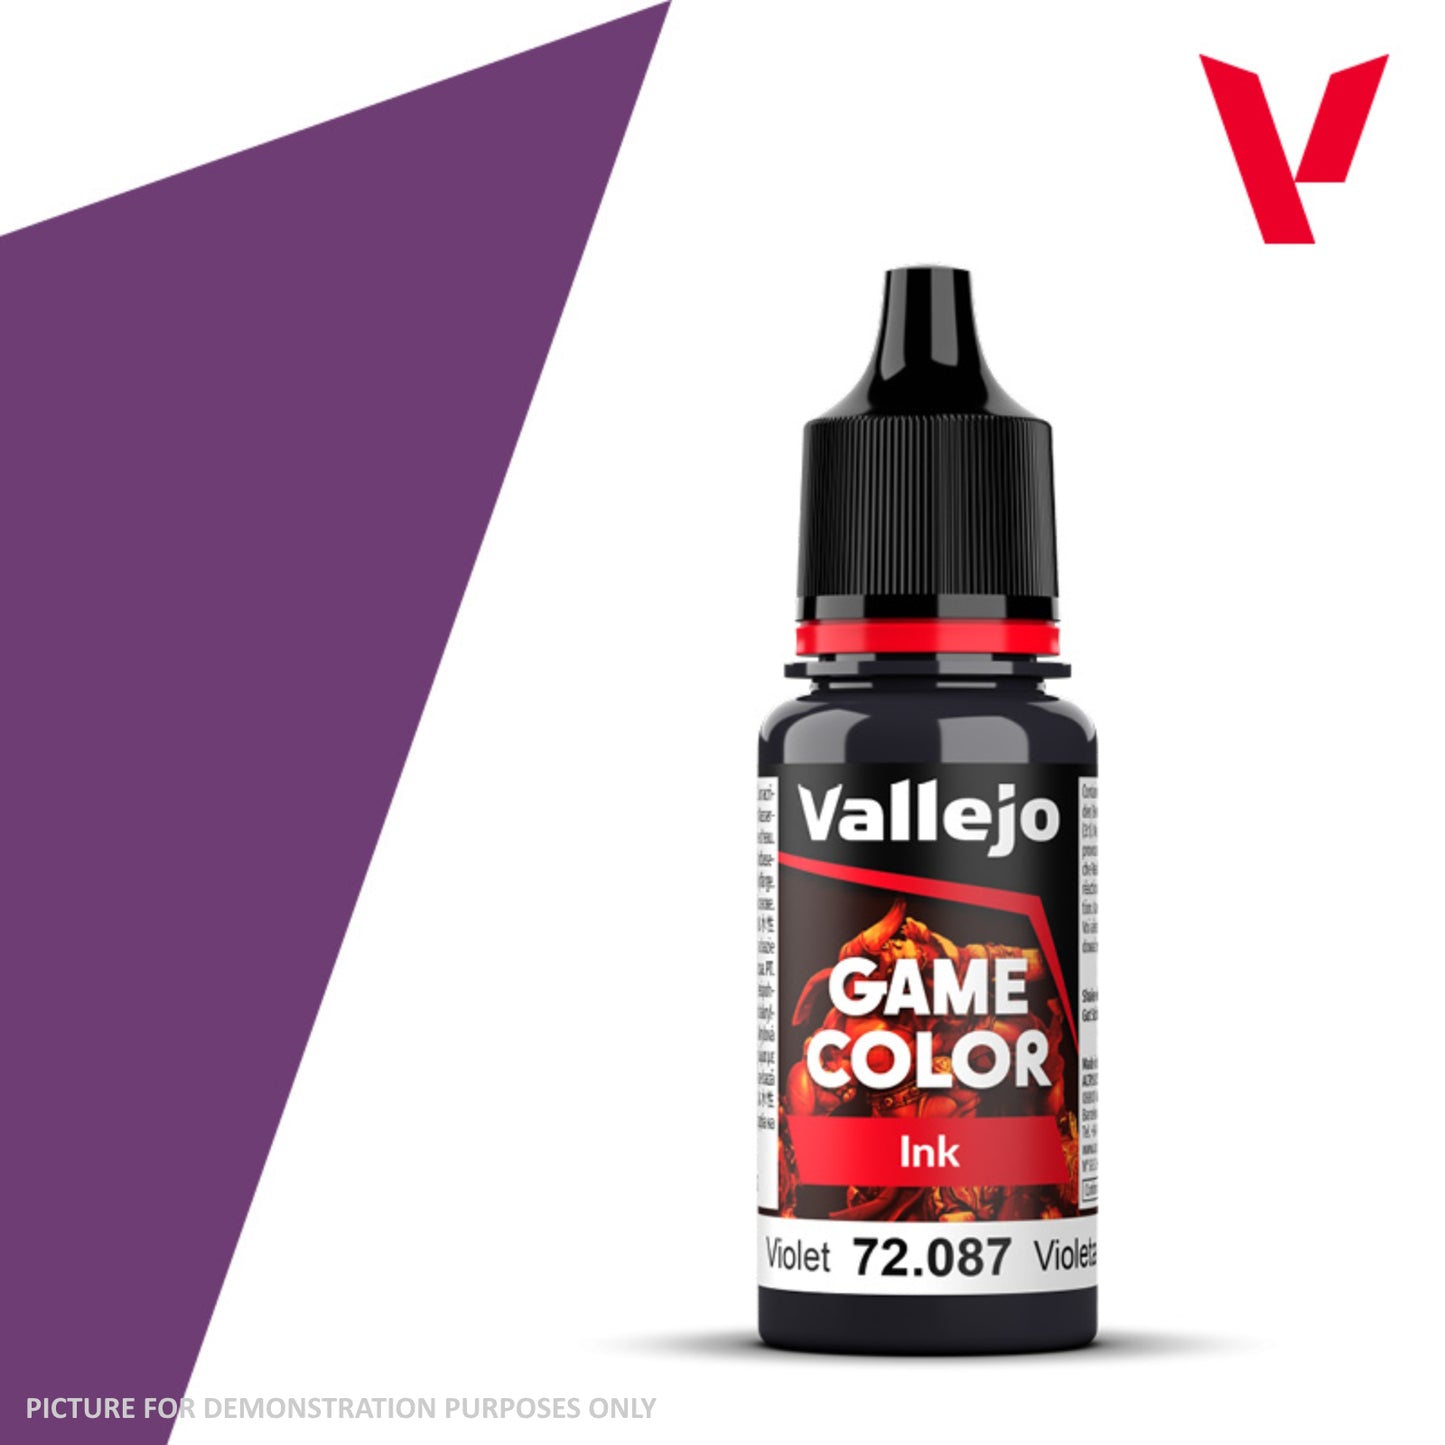 Vallejo Game Colour Ink - 72.087 Violet 18ml